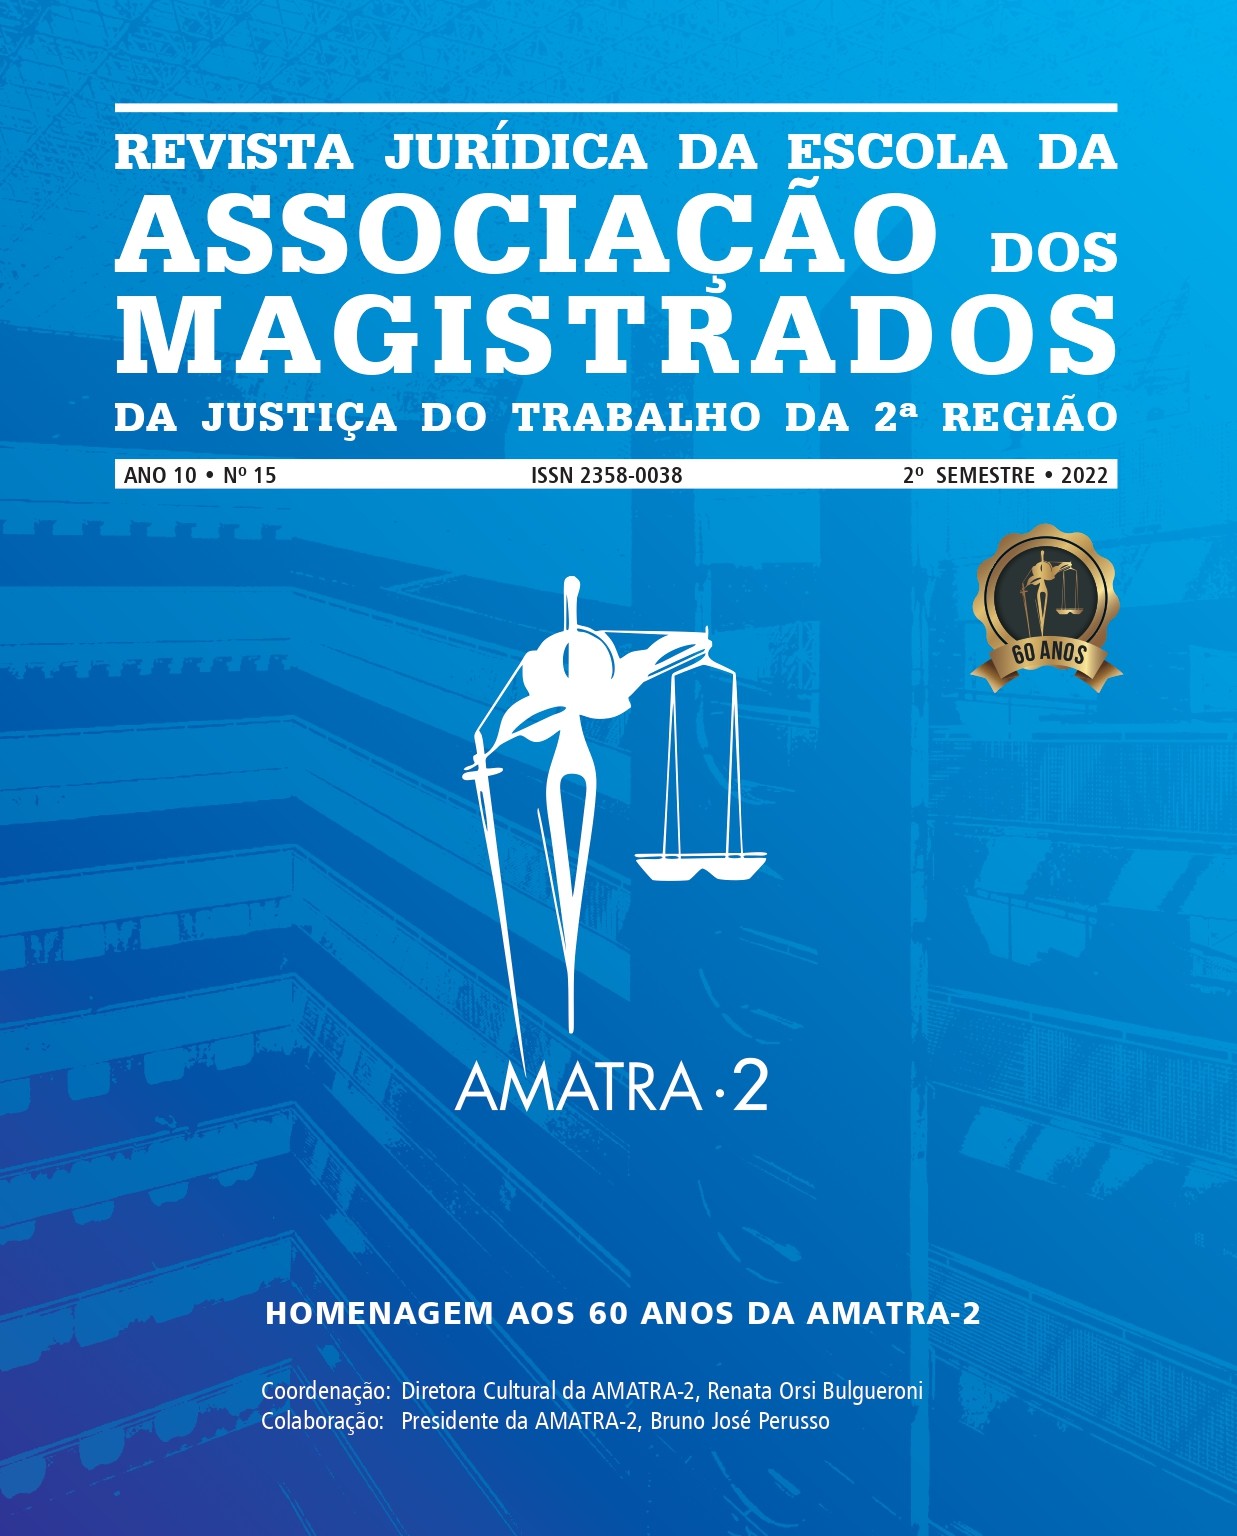 Jornal AMATRA XV NEWS Edição 34 by AMATRA XV - Issuu